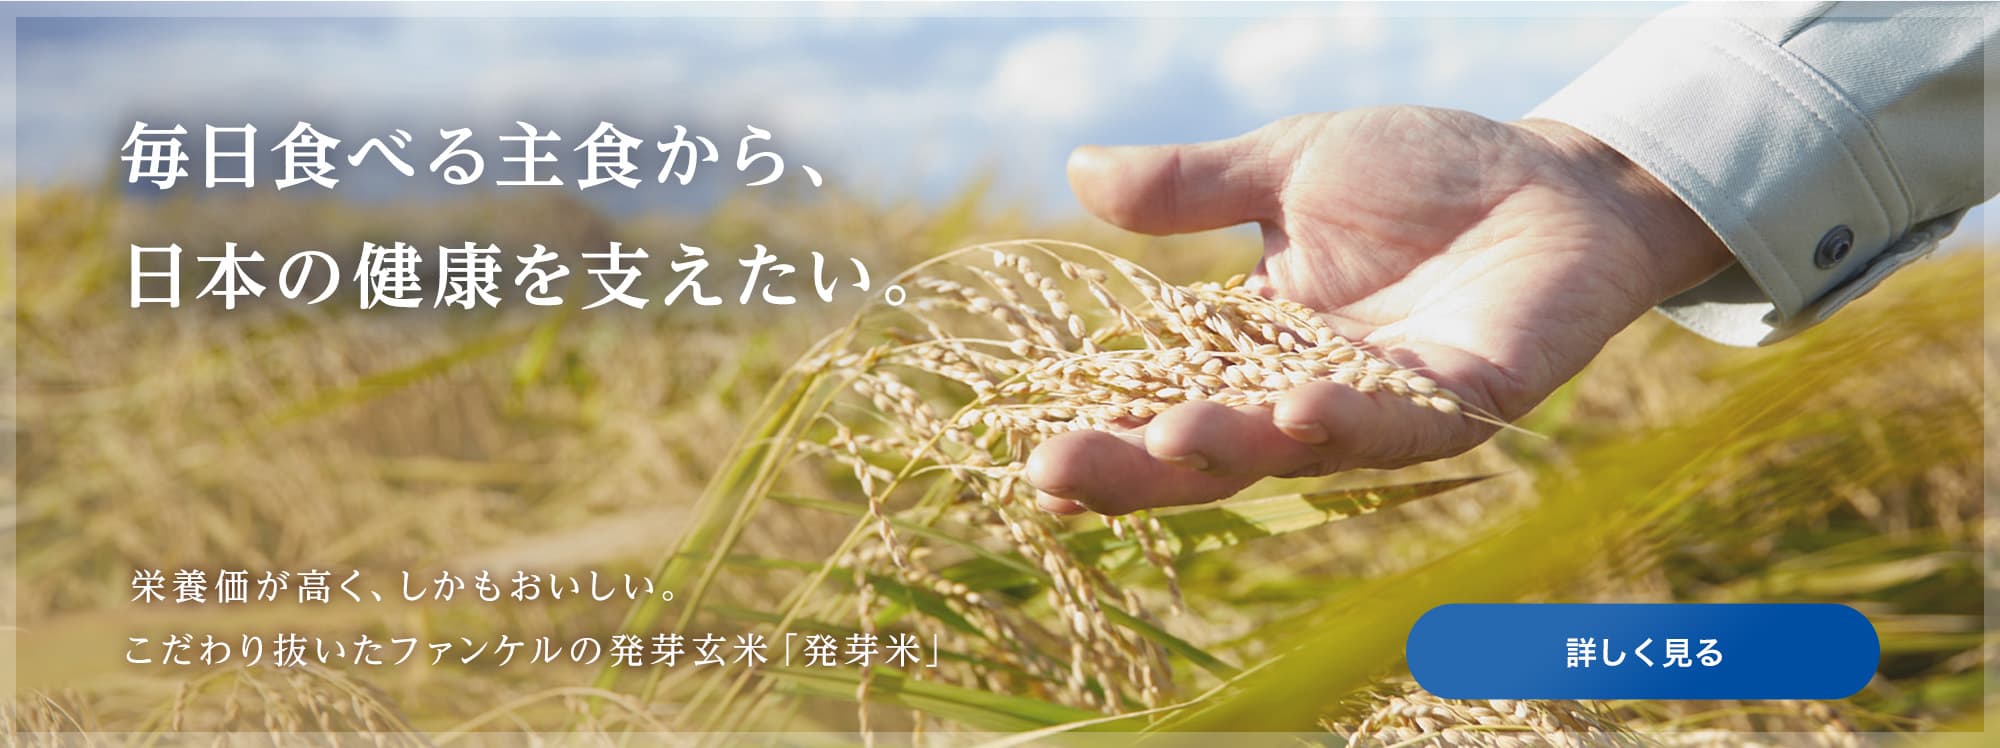 ファンケルは「発芽米」で、生涯にわたる健康づくりを応援します 栄養価とおいしさを兼ね備え、簡単に炊ける理想のお米、発芽米のこだわりを紹介します。